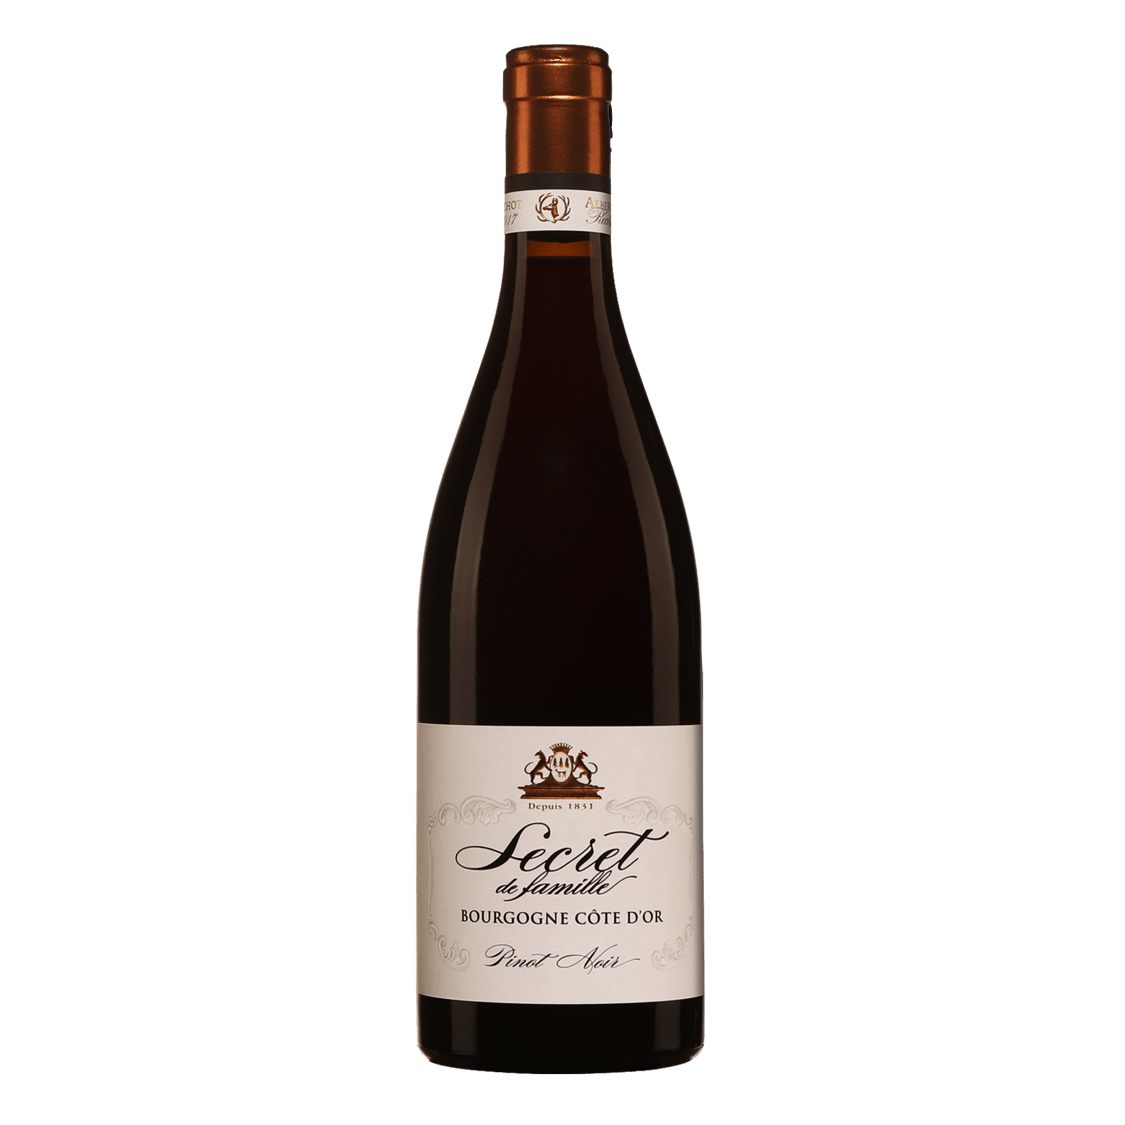 亞柏彼修 家族秘藏系列 金丘特選紅酒 2017 || Albert Bichot Bourgogne Cote D'or "Secret De Famille" 2017